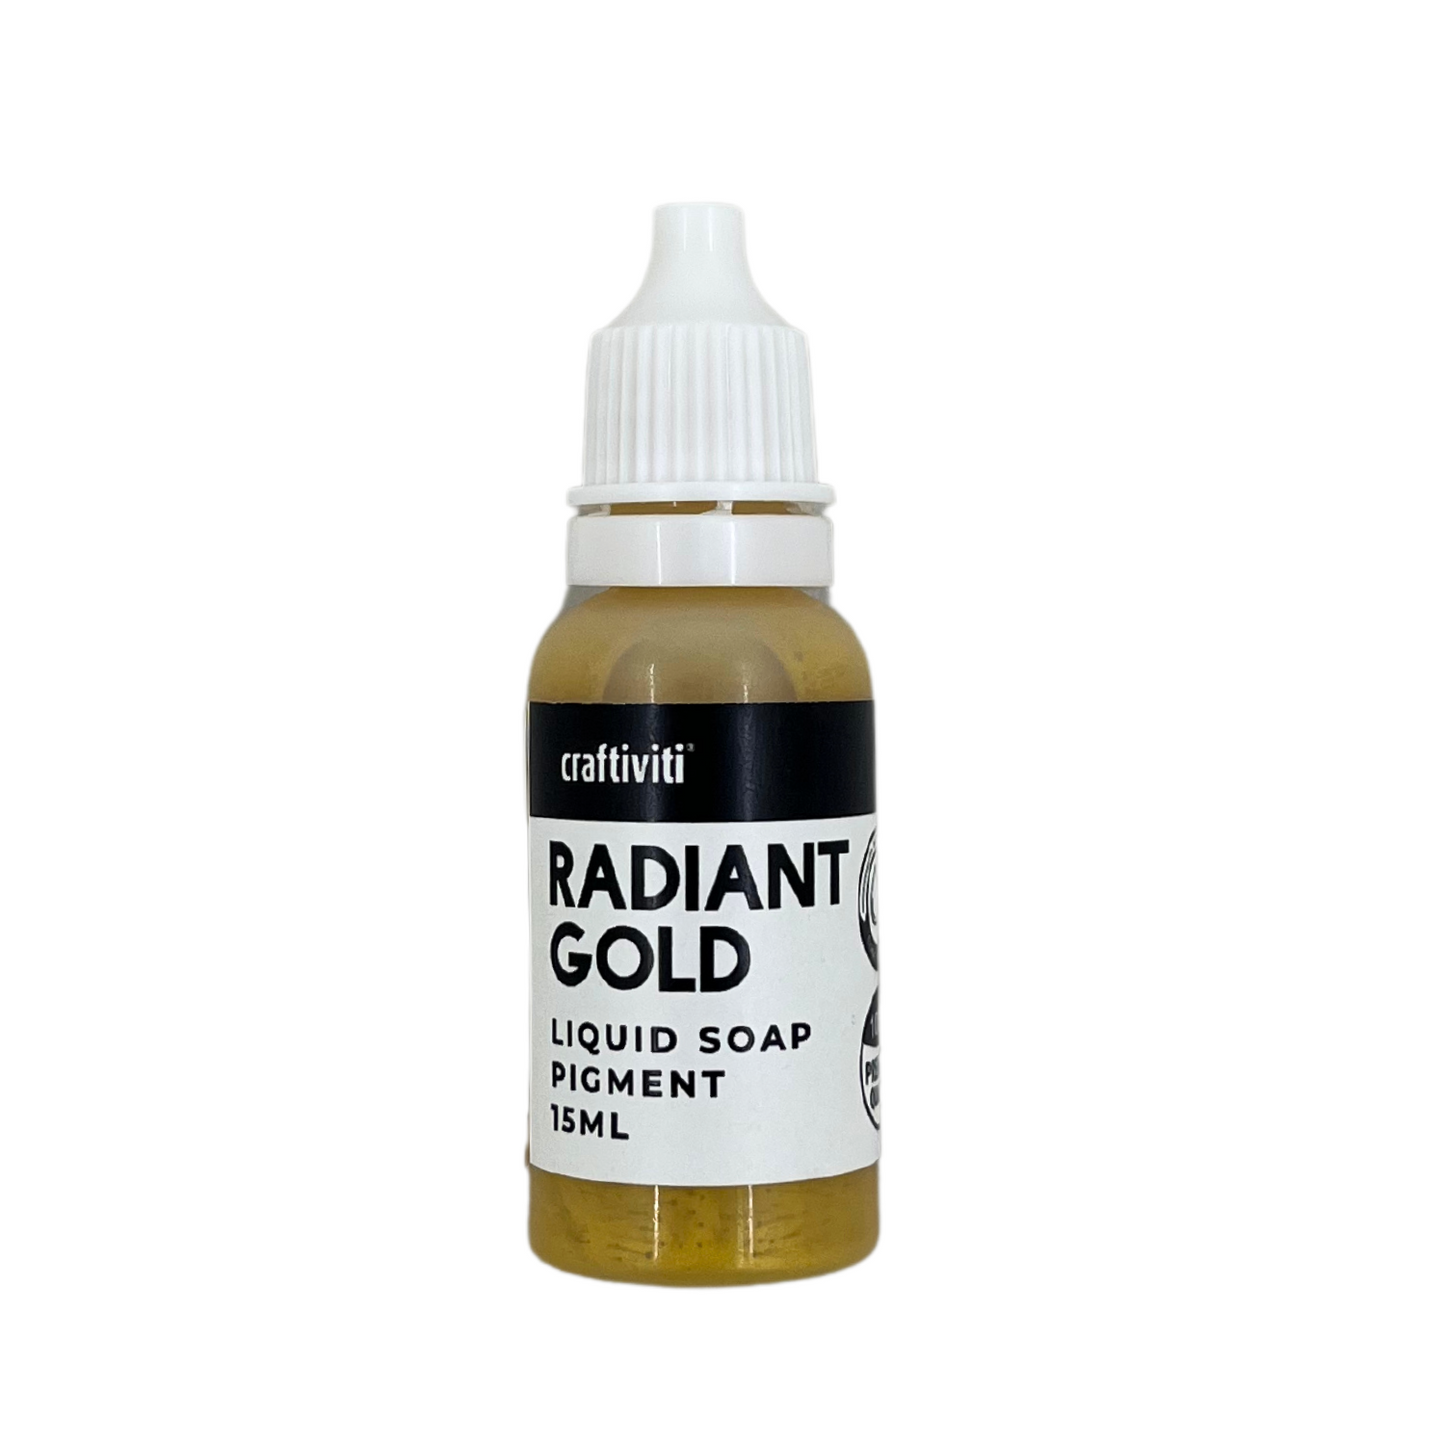 Liquid Soap Pigment 15ml - Radiant Gold